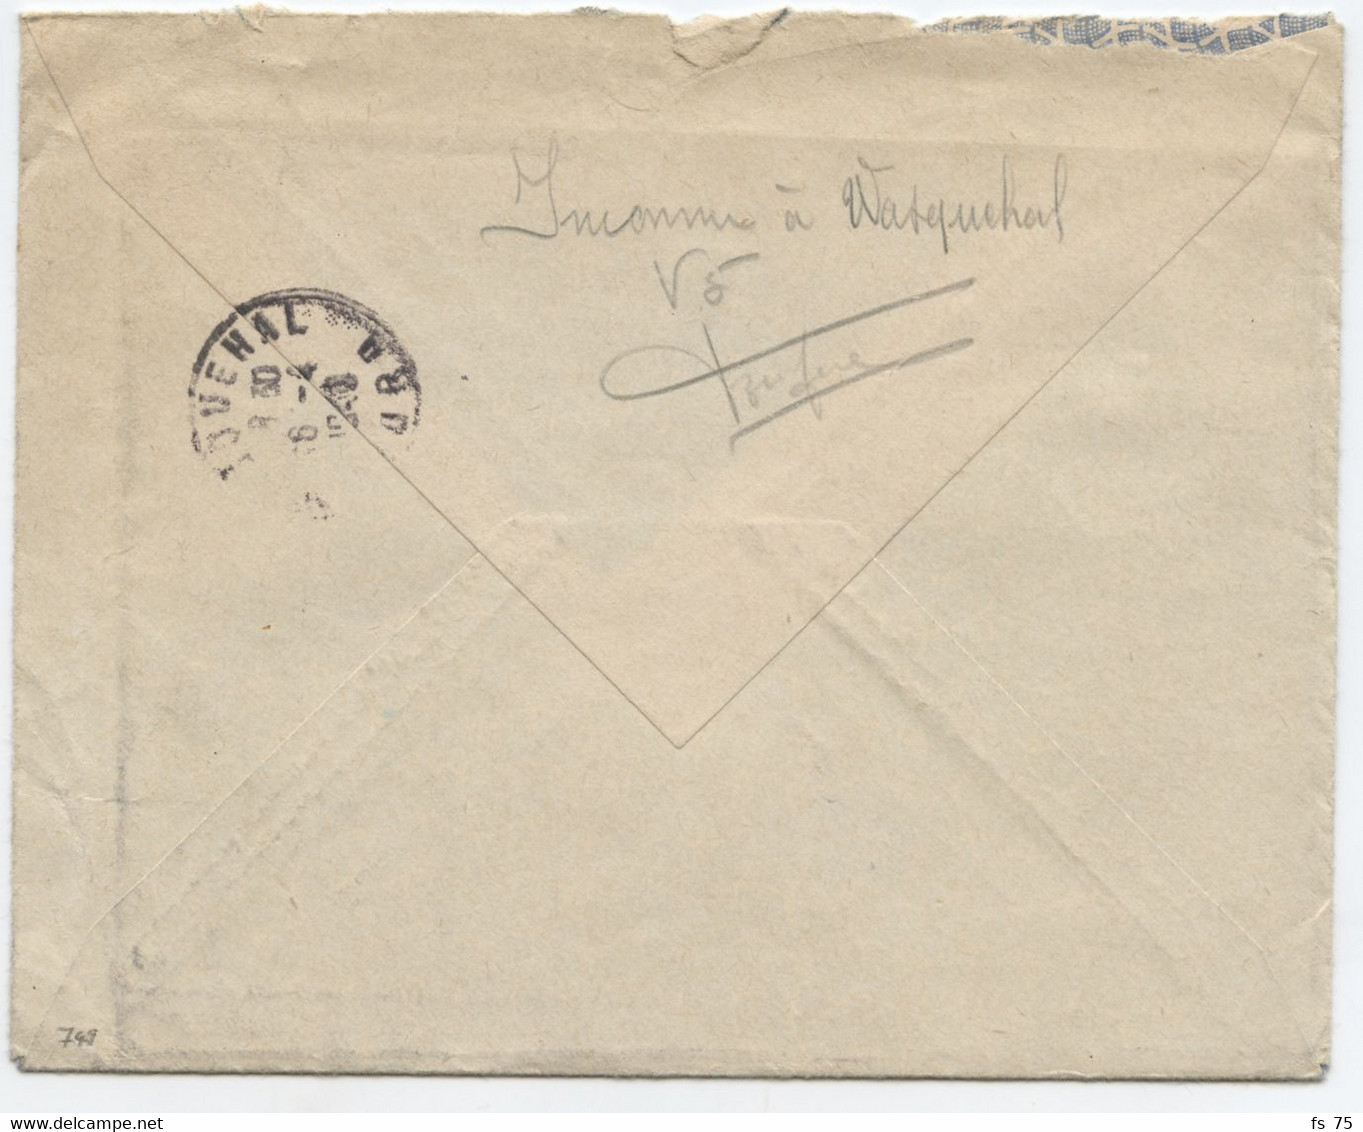 BELGIQUE - COB 749 1F35 CARMIN ADRIEN GERLACHE 5C RELAIS POTTES SUR LETTRE FRONTALIERE POUR CROIX, 1948 - Lettres & Documents